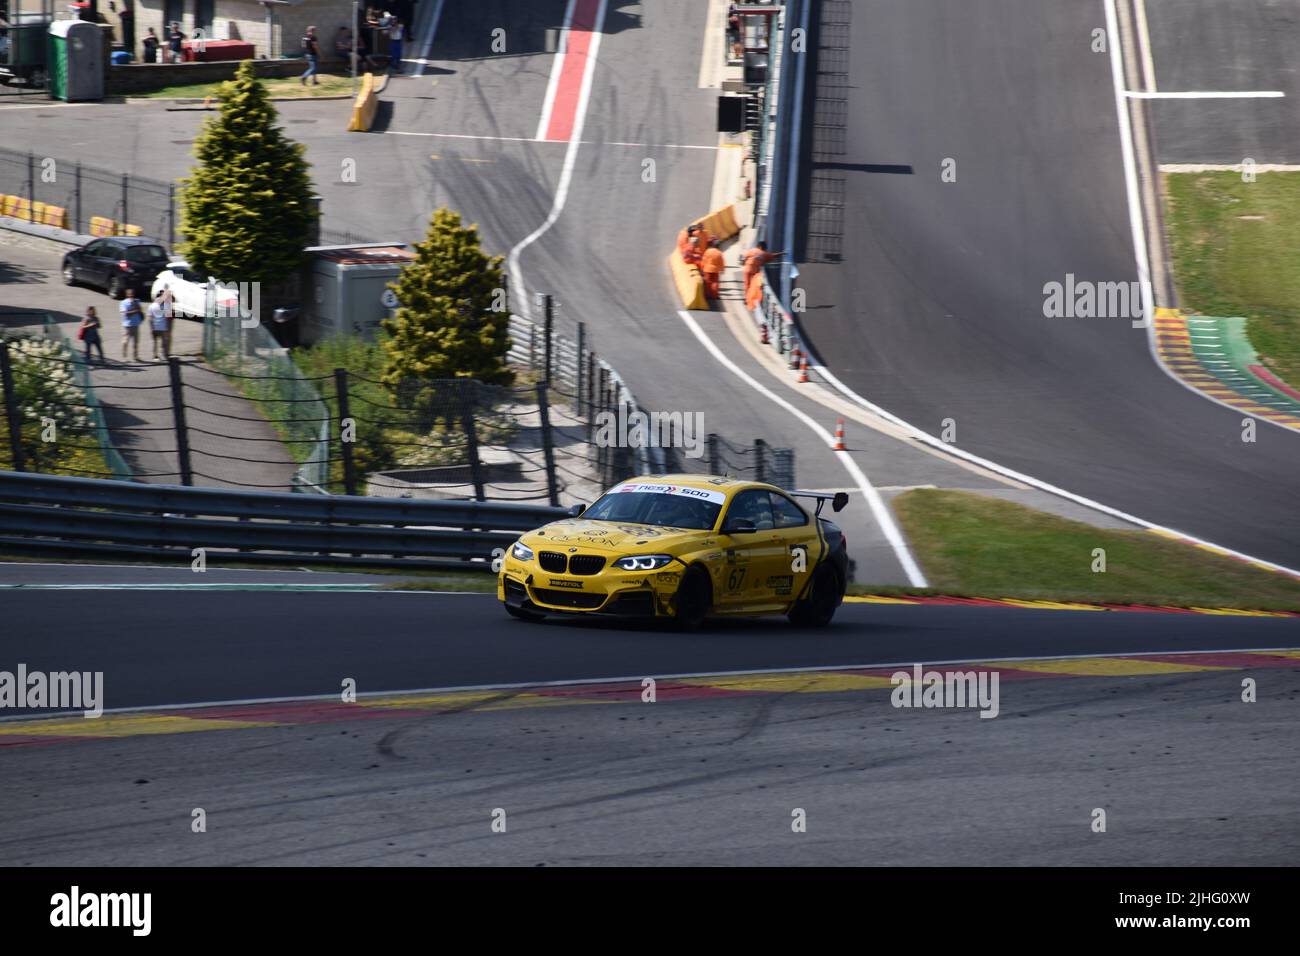 a car racing at spa francorchamps Stock Photo